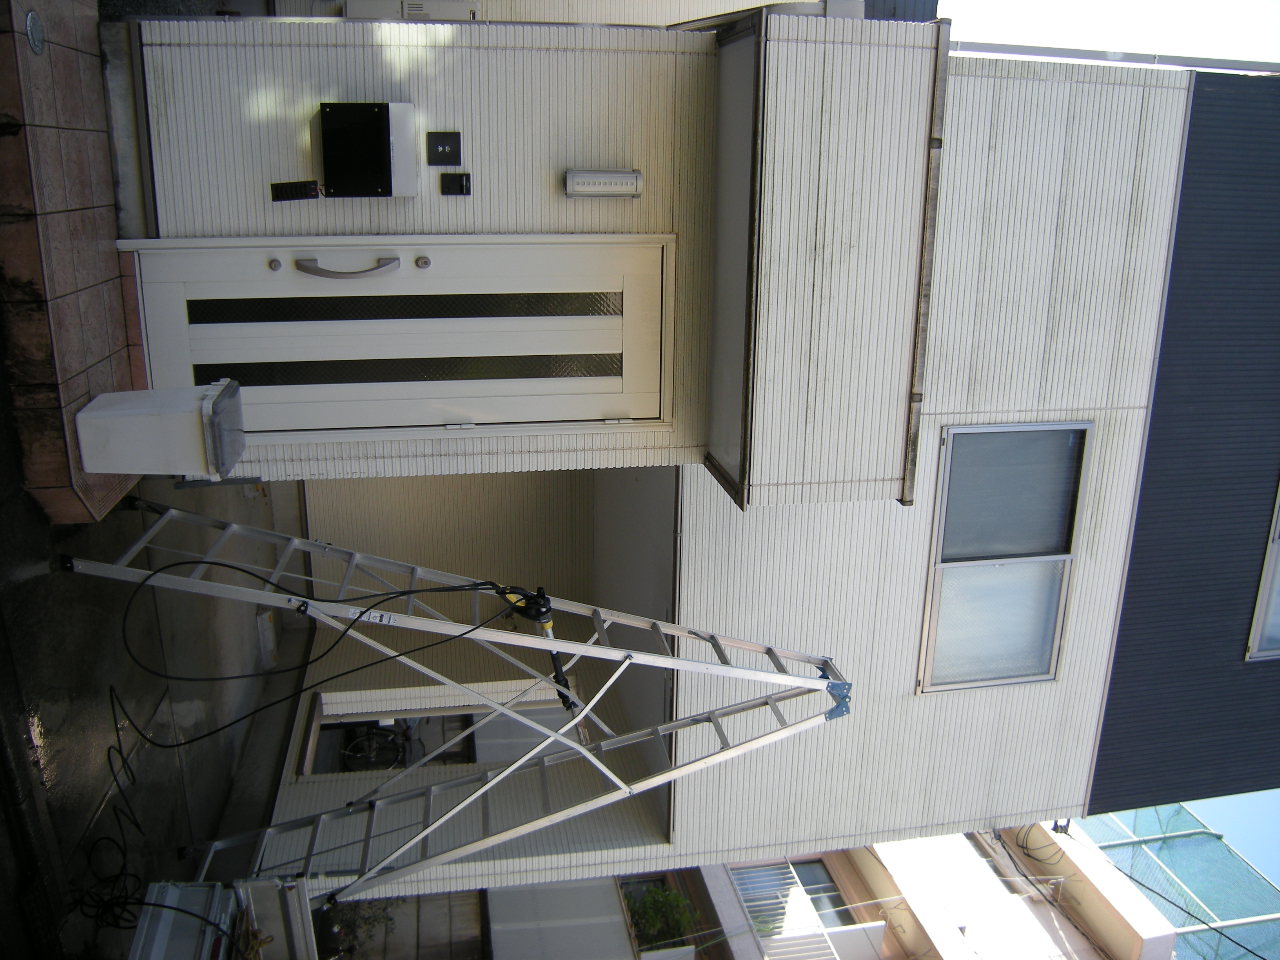 松阪市 高圧洗浄 外壁 高圧洗浄機 コンクリ レンガ ブロック 車庫 玄関 門柱